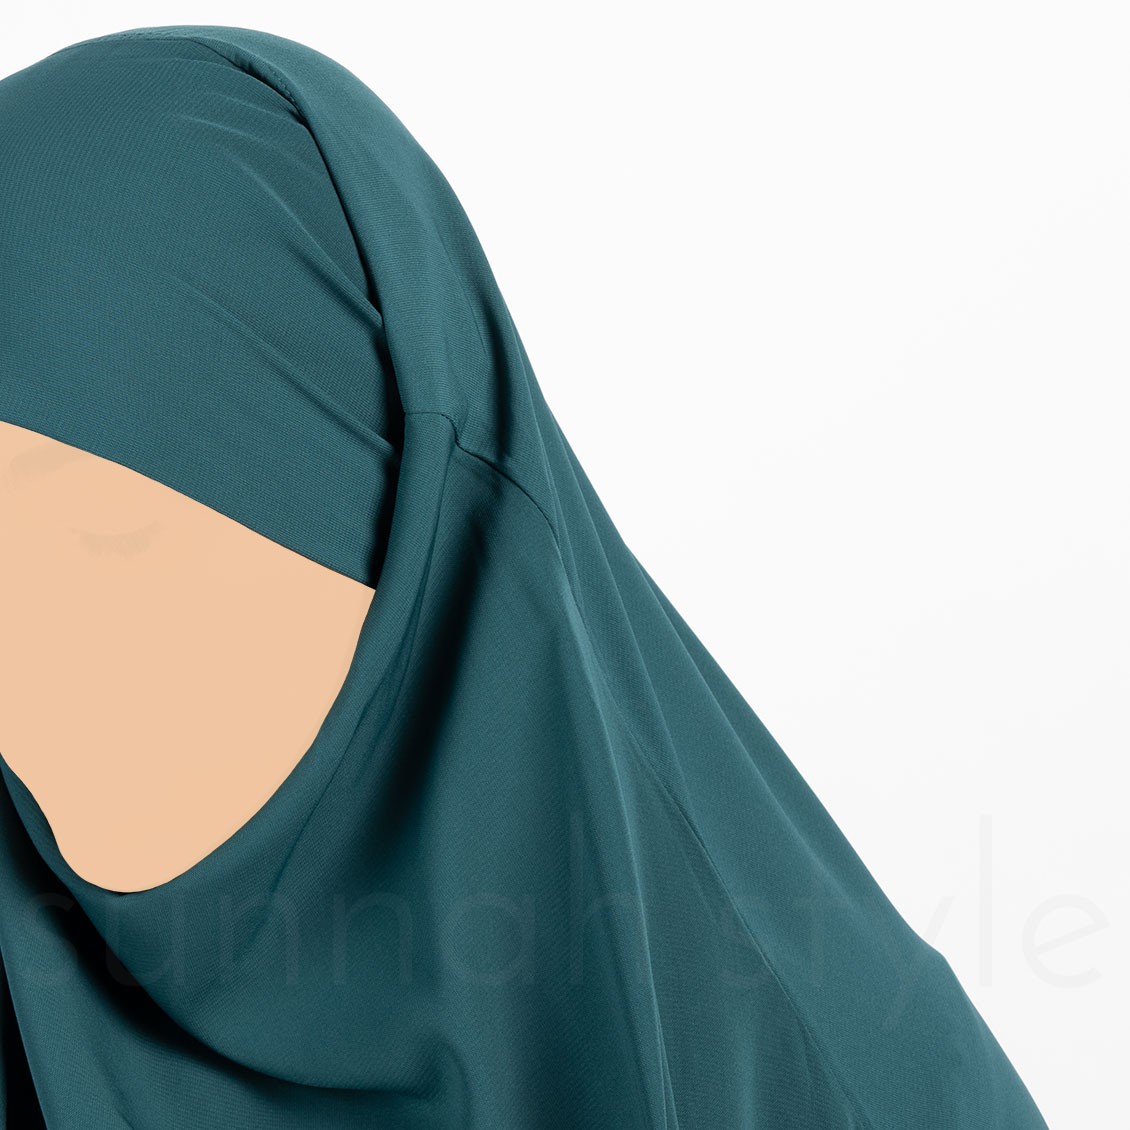 Sunnah Style Plain Jilbab Top Knee Length Teal